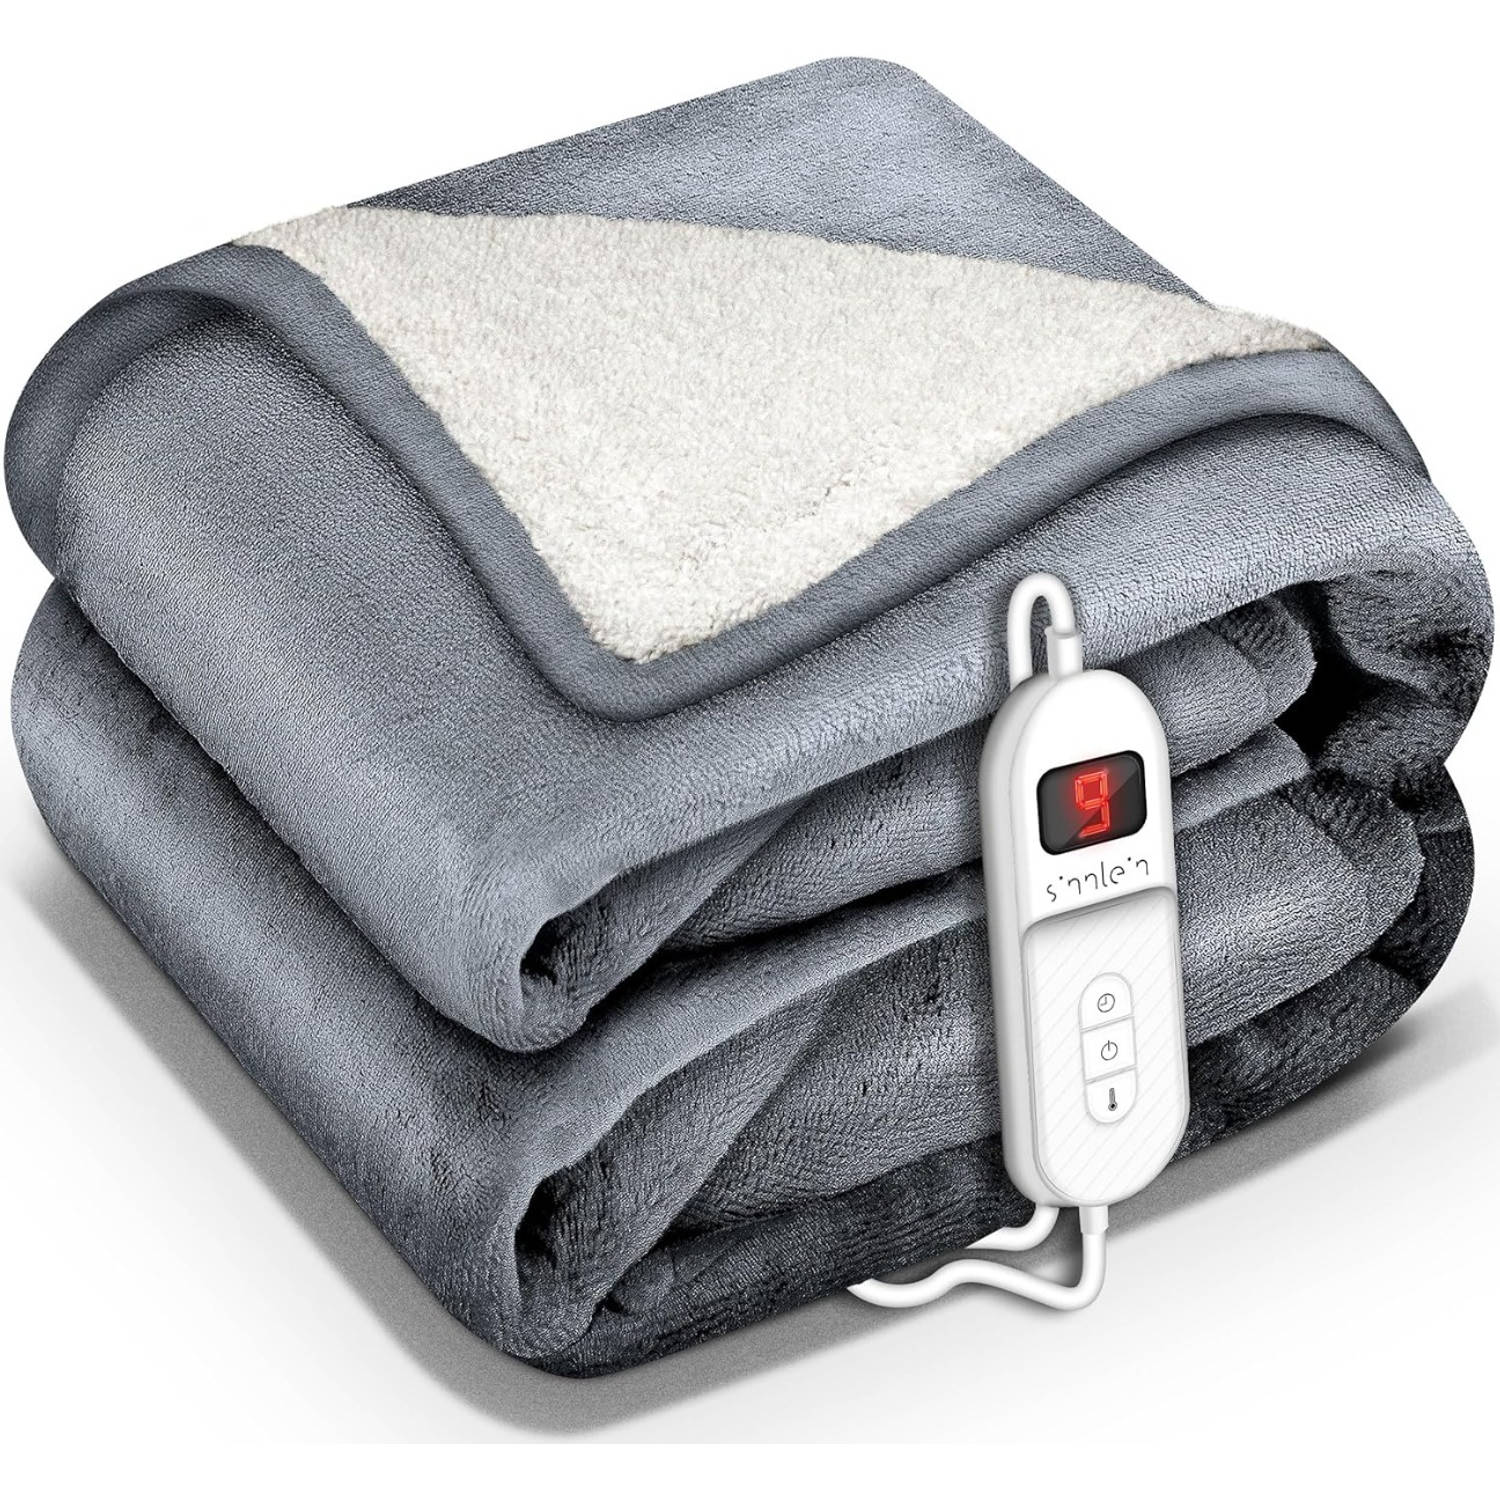 Sinnlein- Elektrische deken met automatische uitschakeling, lichtgrijs, 160x120 cm, warmtedeken met 